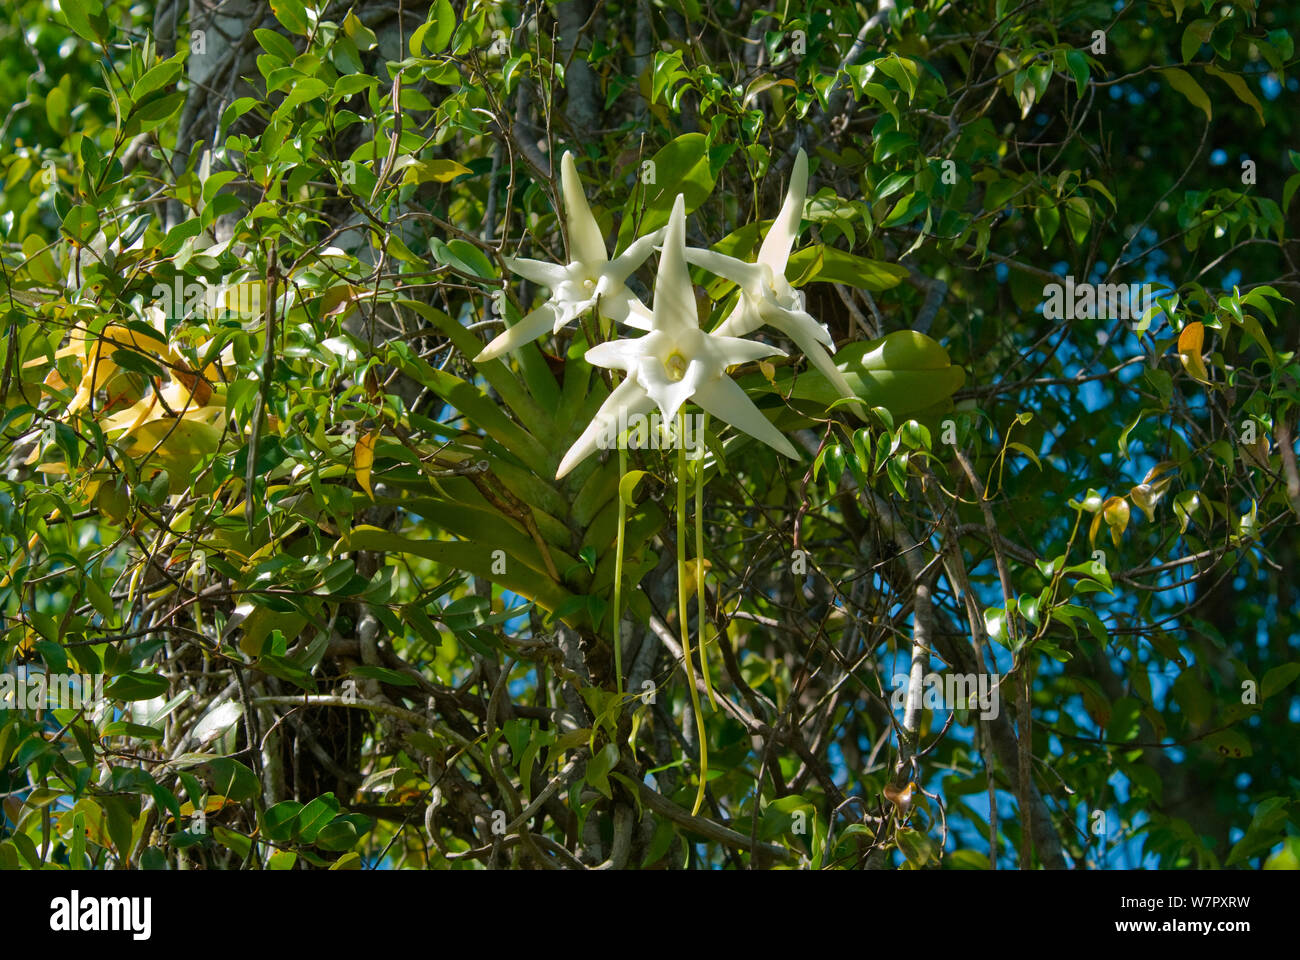 La orquídea de Darwin (Angraecum sesquipedale) especie que es polinizada  por una larga lengua bífida, Polilla de Ambila, Madagascar. Fotografía  tomada en el lugar de la BBC de la serie 